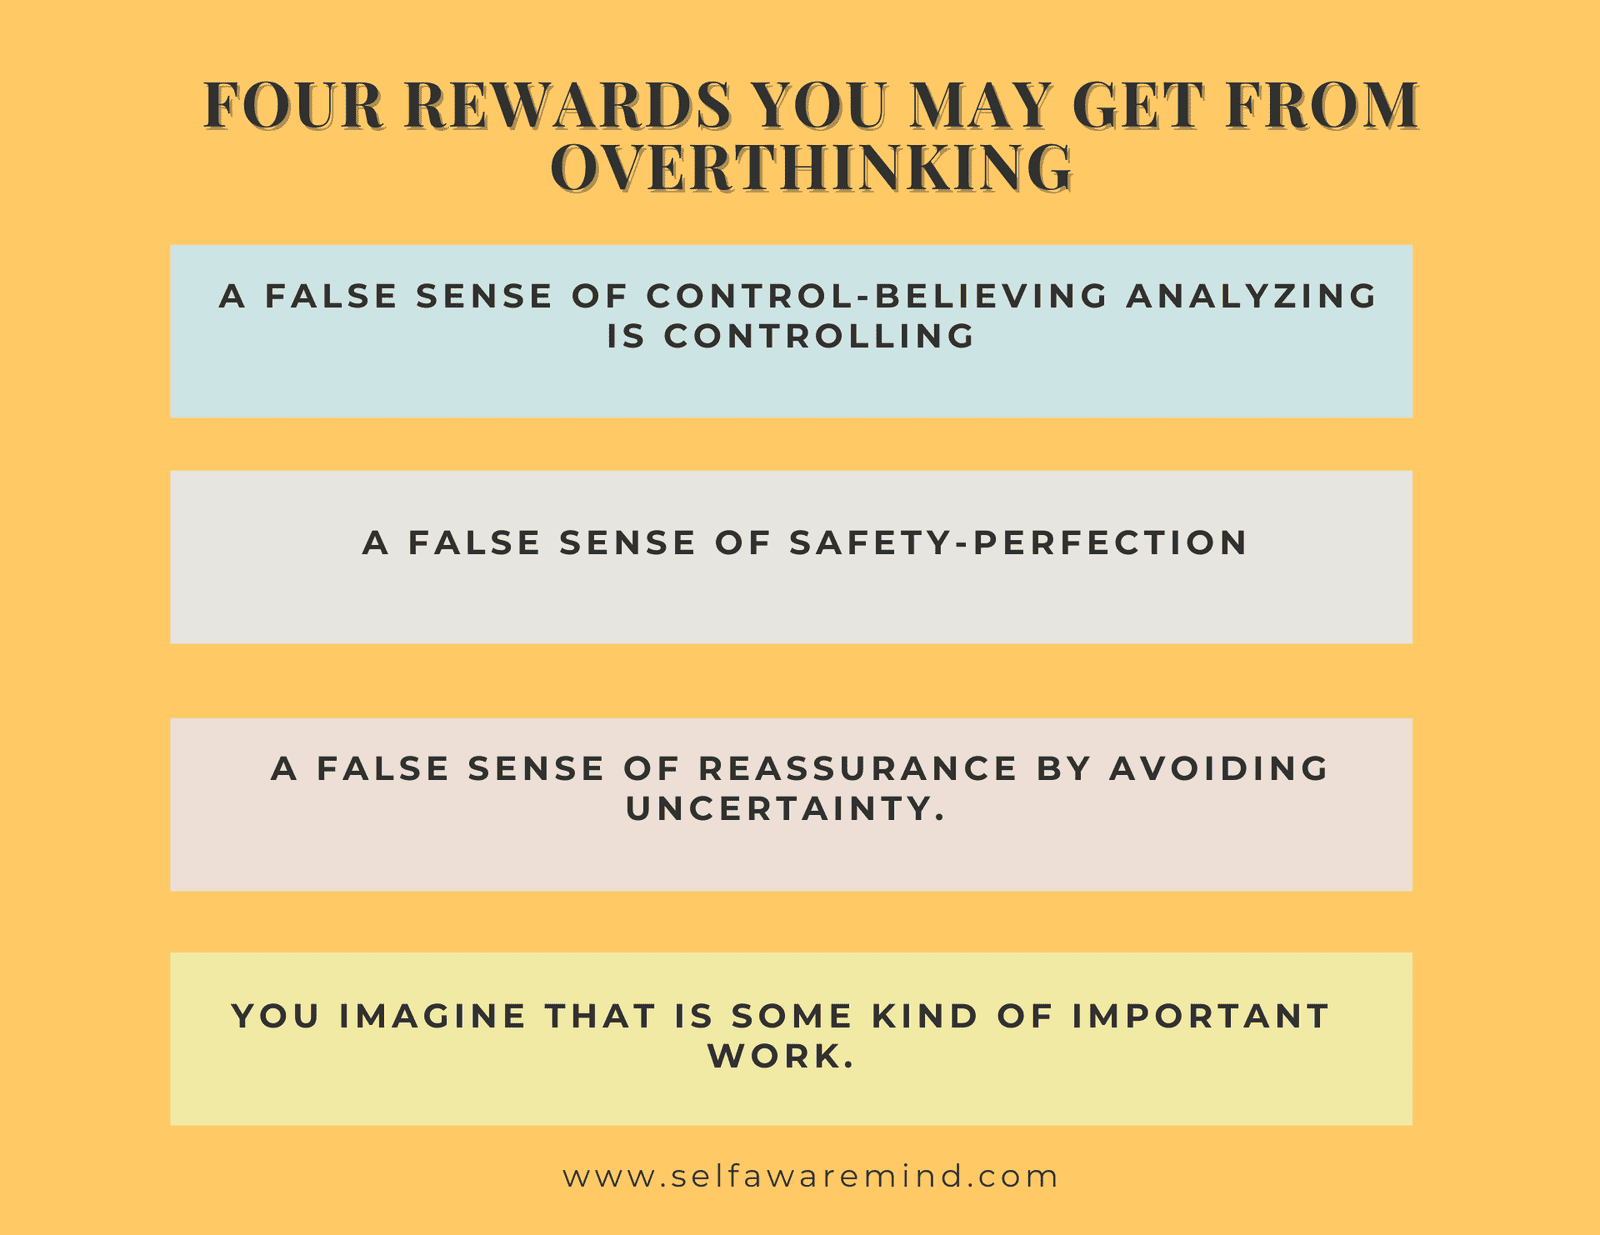 4 rewards of overthinking